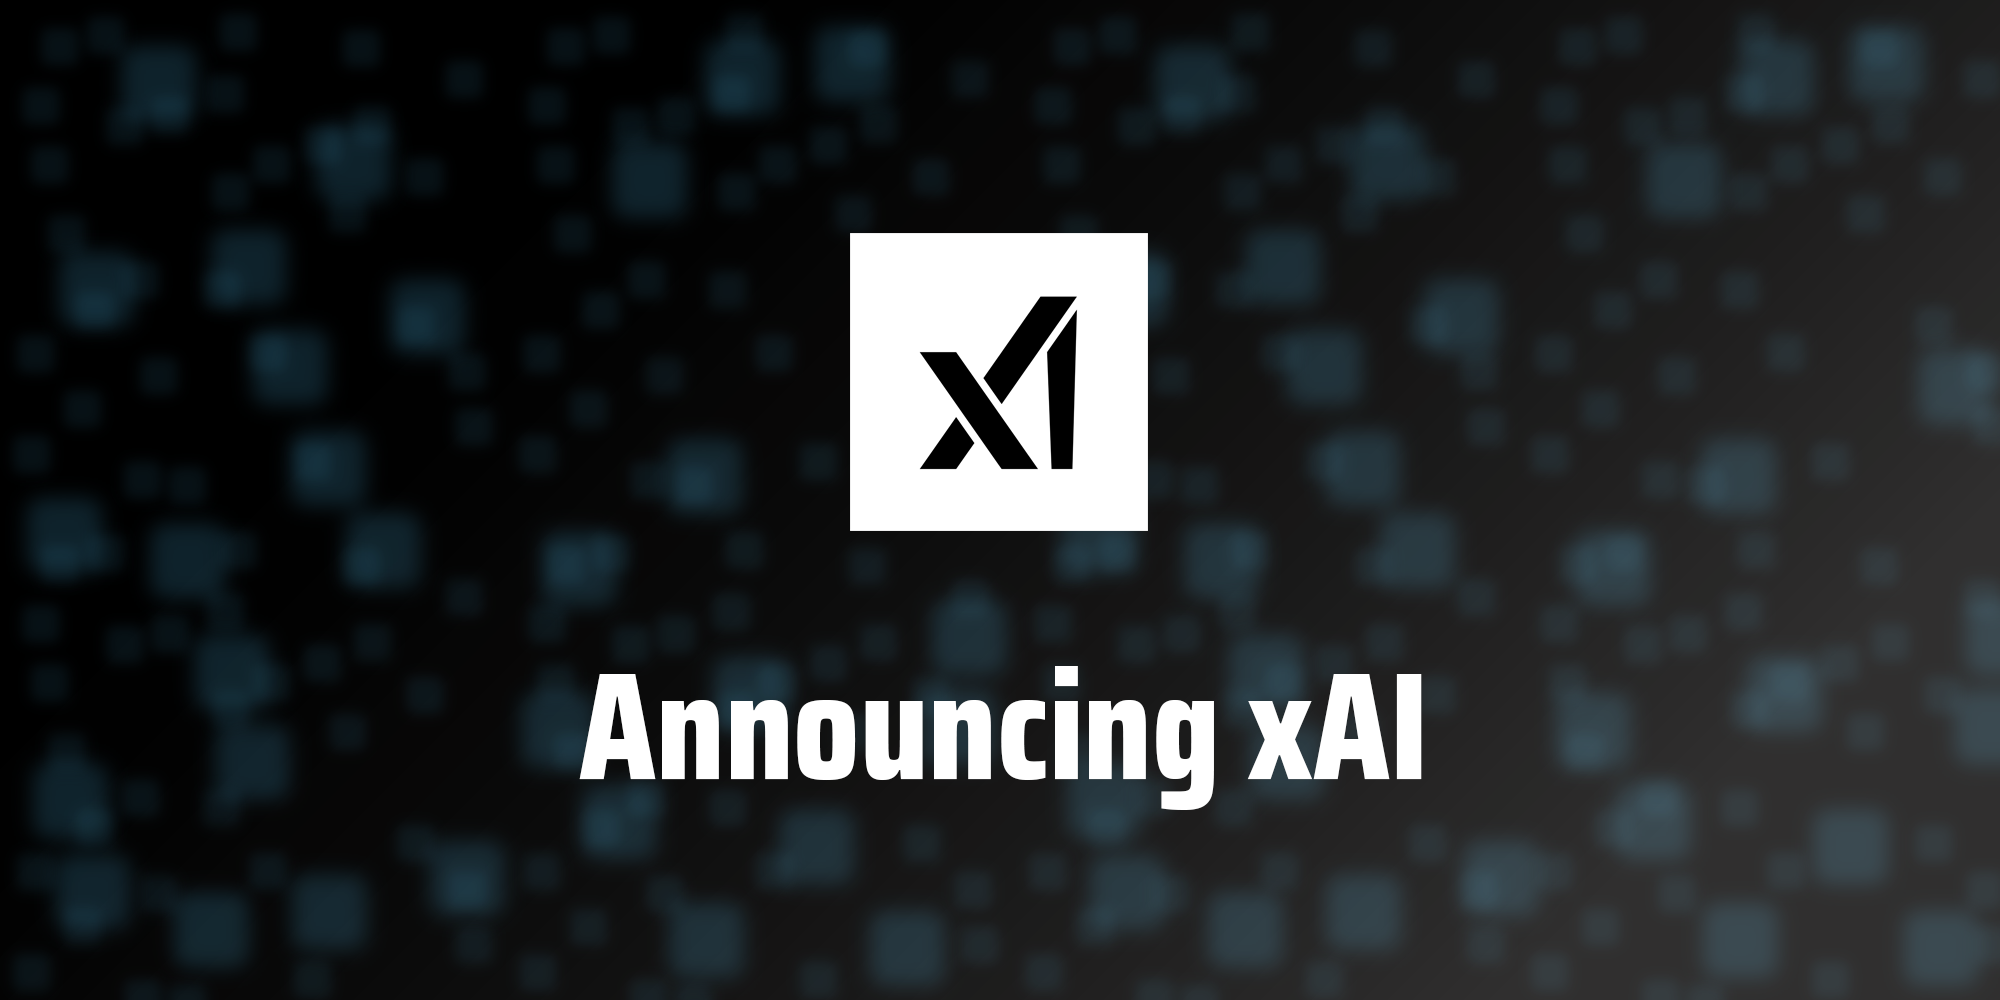 xAI veröffentlicht erstes Modell künstlicher Intelligenz für eine "ausgewählte Gruppe von Nutzern".